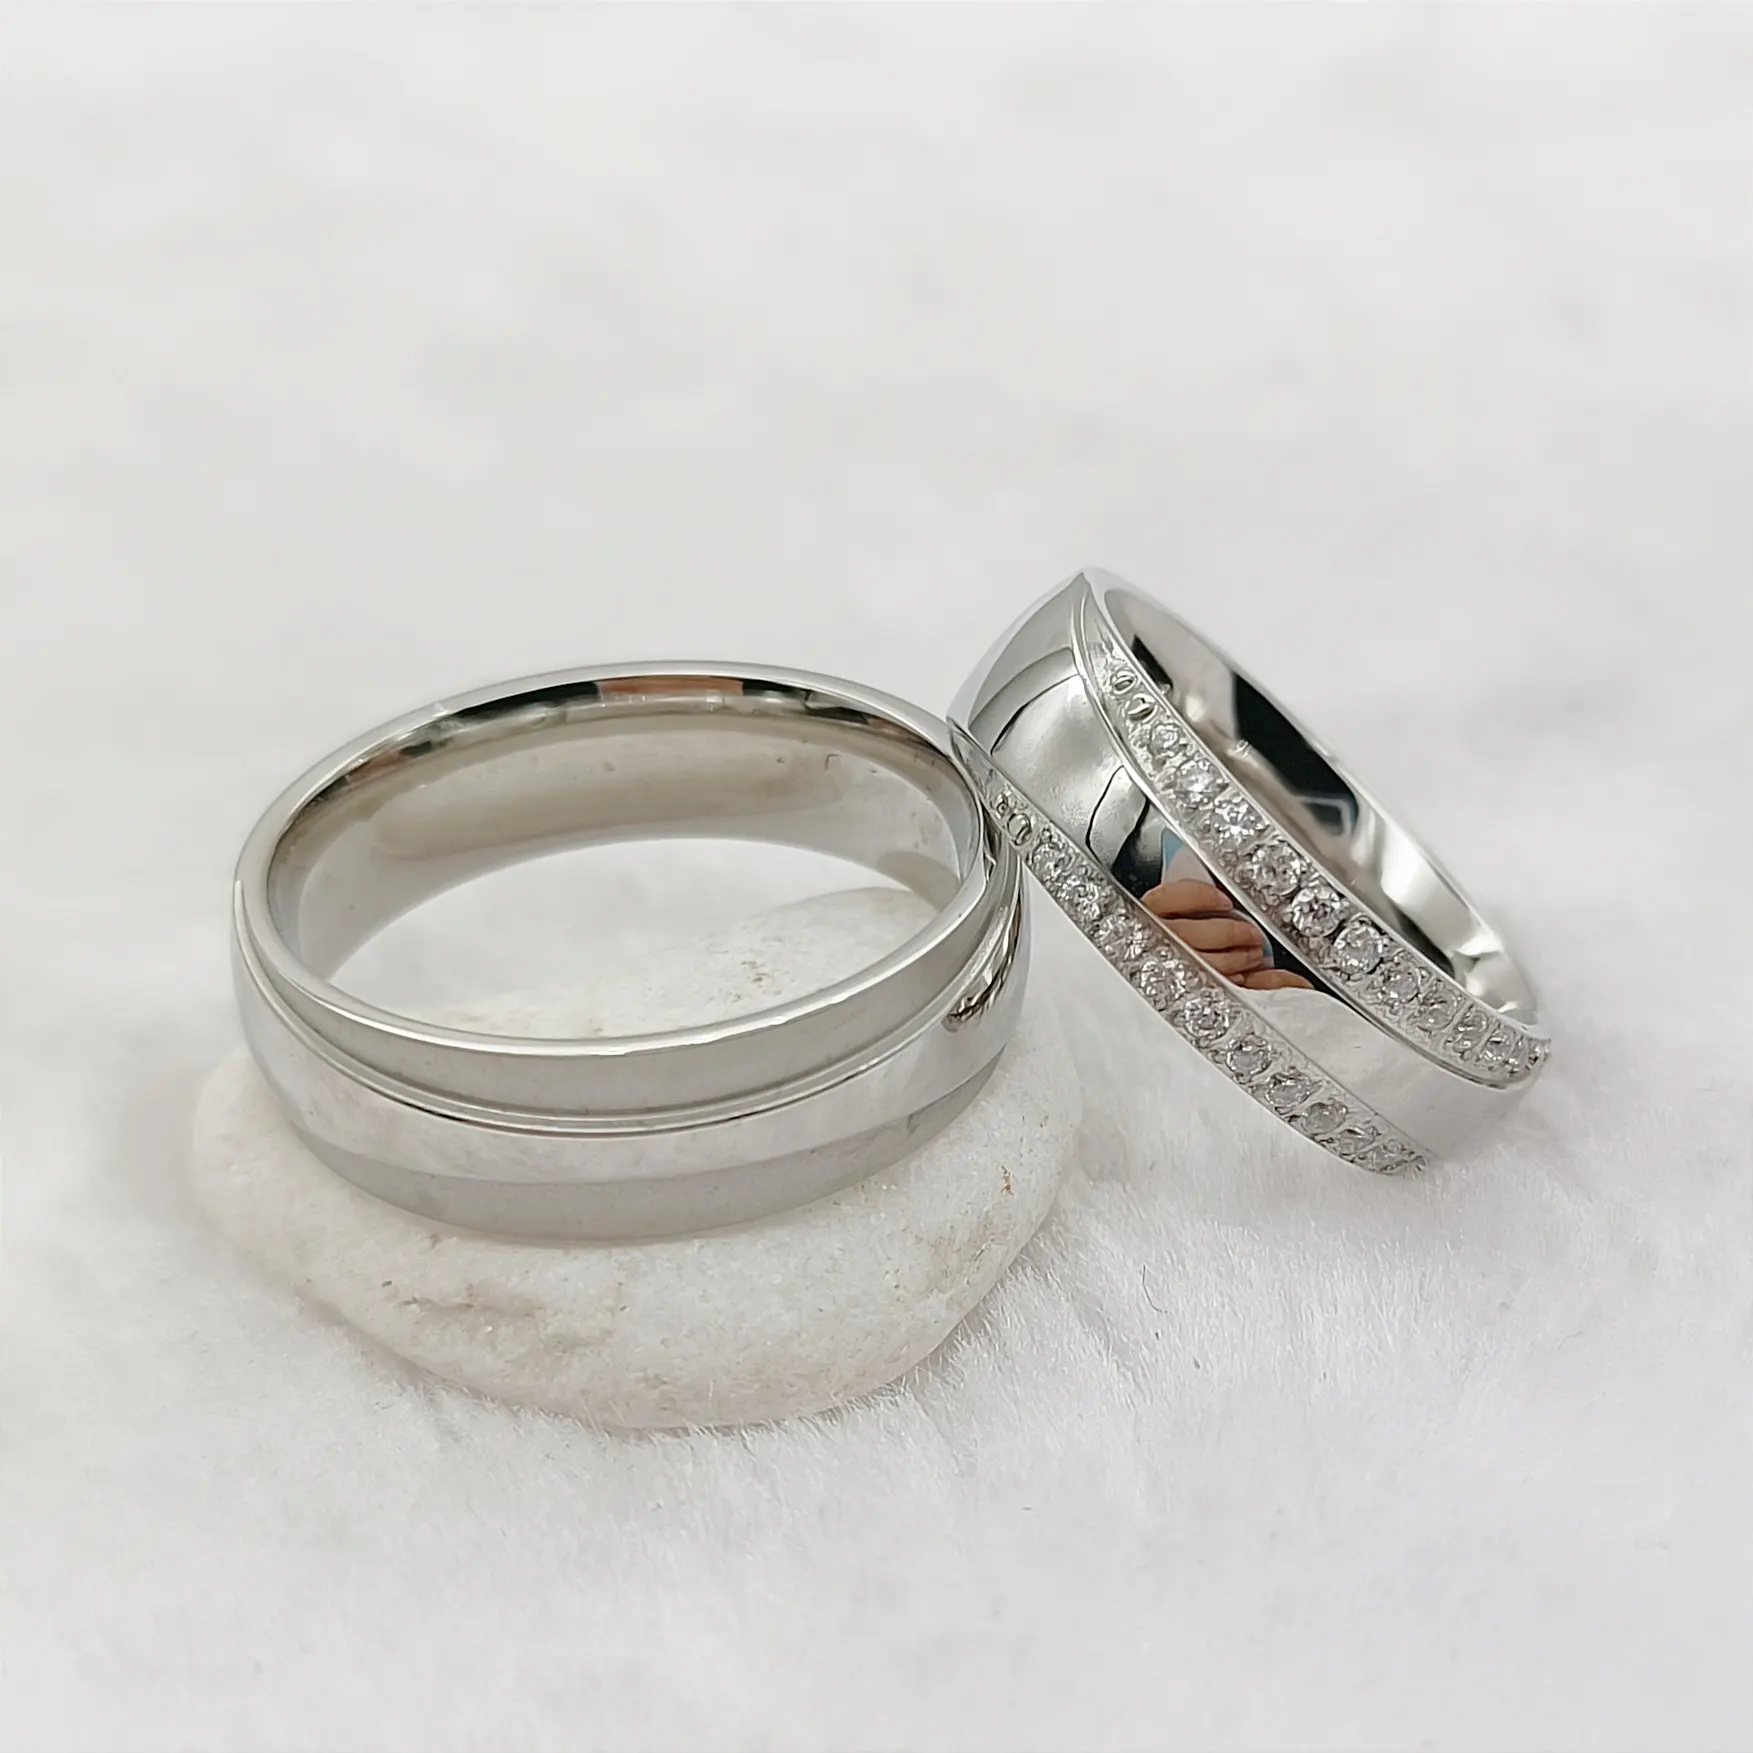 ชุดแหวนแต่งงานประดับเพชรซีแซดสำหรับผู้หญิงและผู้ชายเครื่องประดับสแตนเลสงาน316L ทำจากเงินสำหรับ Mne และผู้หญิง